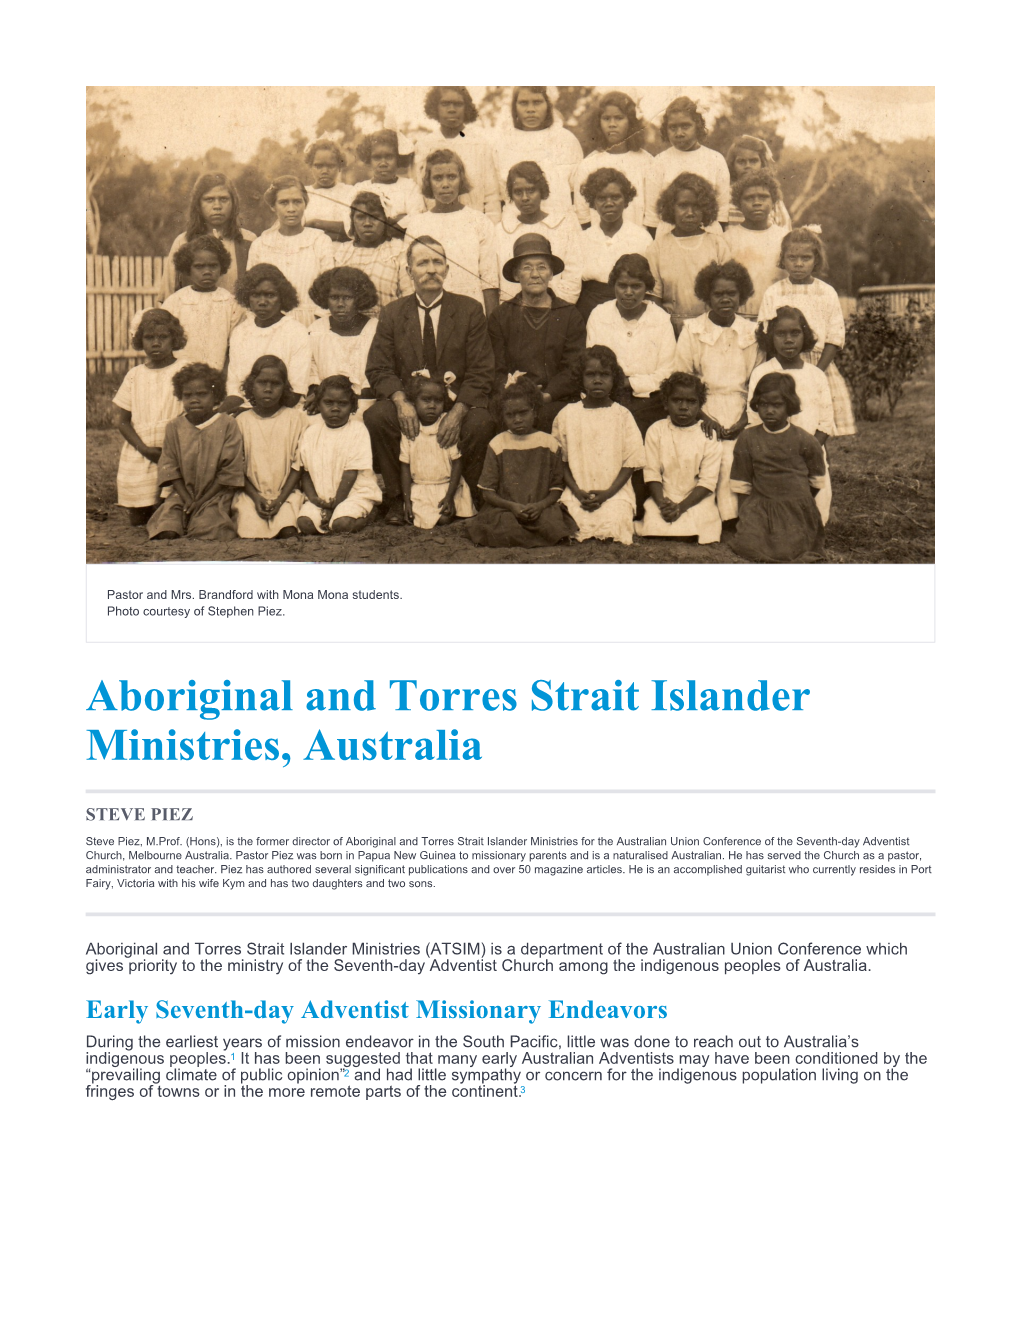 Aboriginal and Torres Strait Islander Ministries, Australia